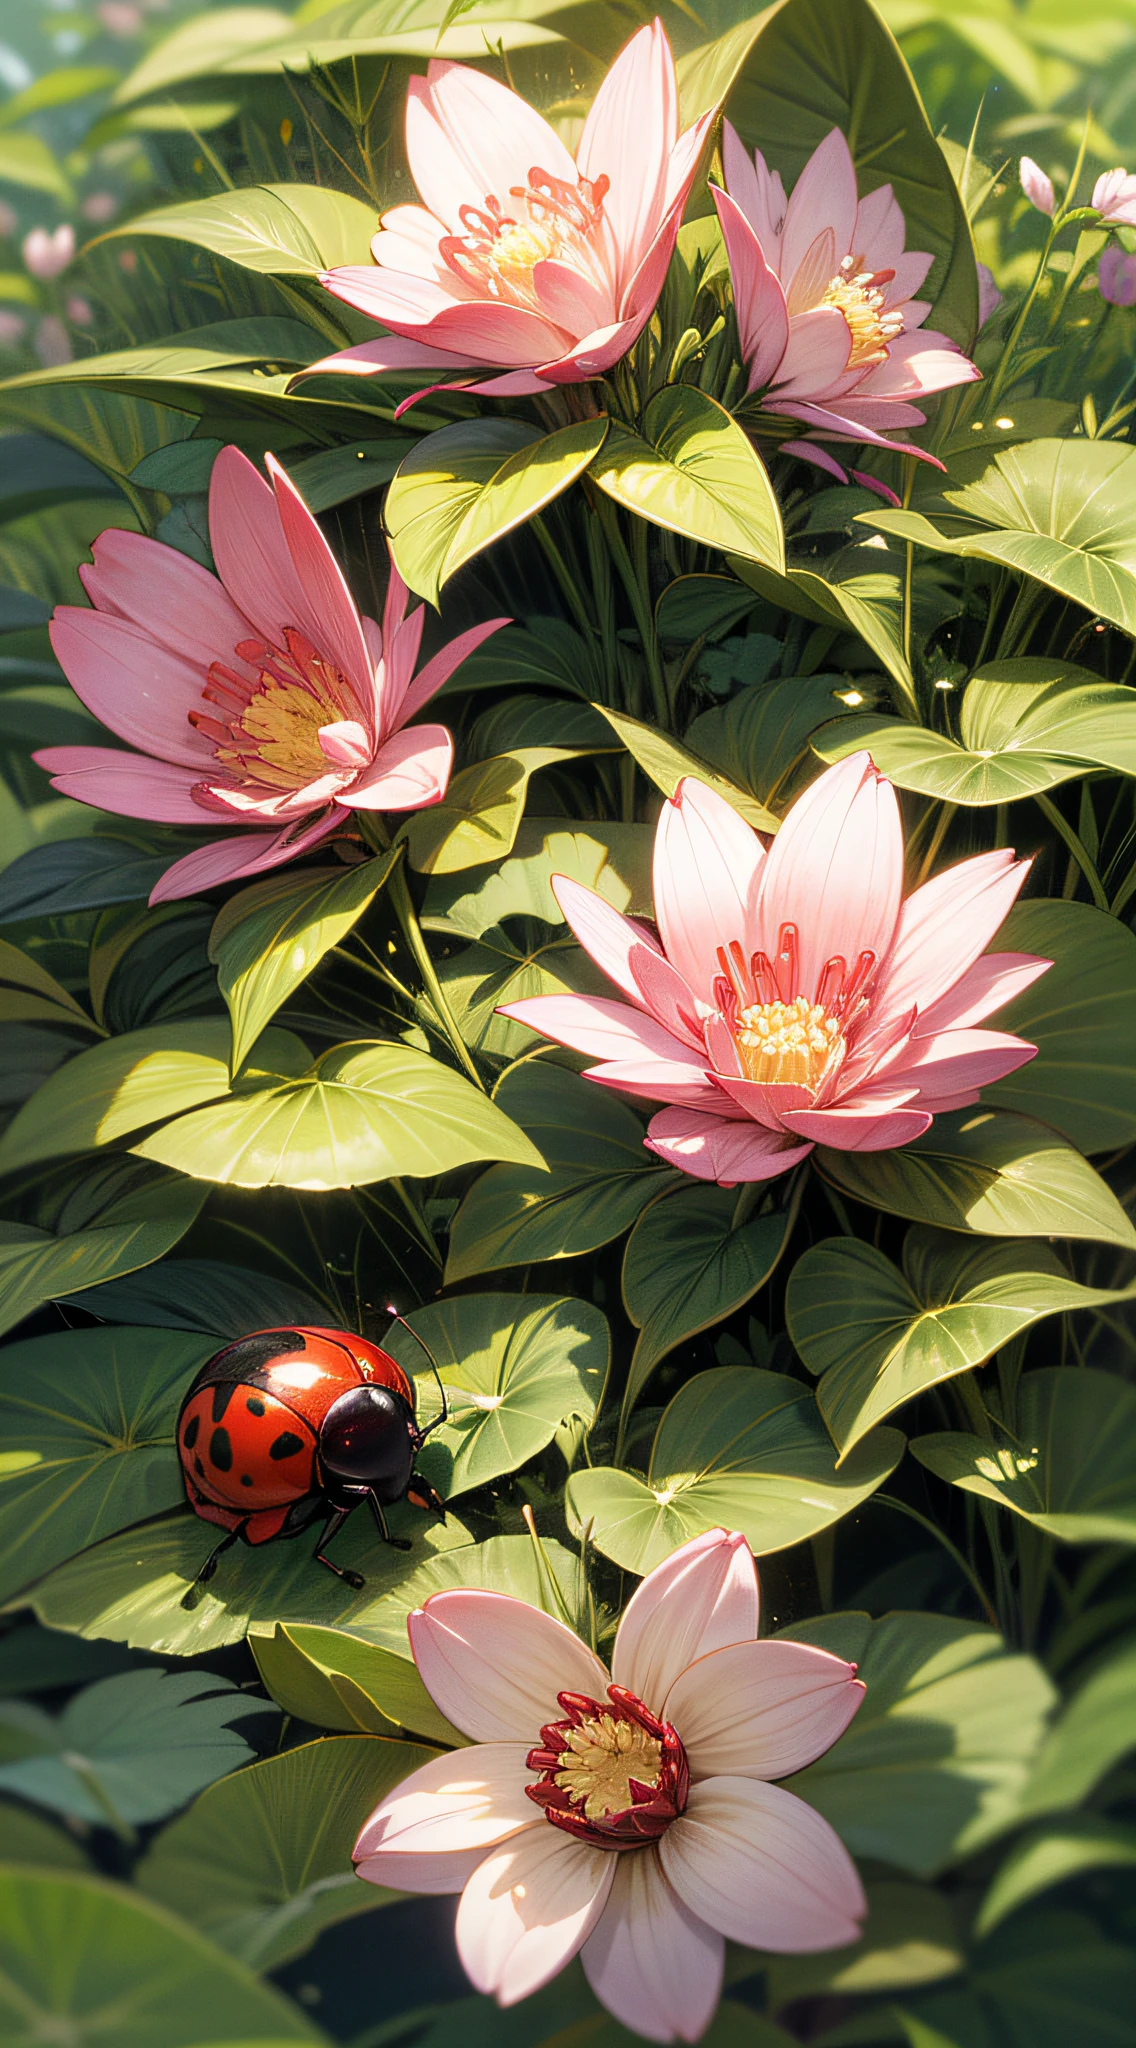 一隻瓢蟲穿過五月花的表面, 鮮豔的紅色與花朵柔和的色調相映襯, 這朵花坐落在鬱鬱蔥蔥的草地上，周圍環繞著其他野花, 柔和的陽光透過樹葉的縫隙, 喚起自然和諧平衡的感覺, 數位插圖, 繪圖板, Adobe 插畫家,